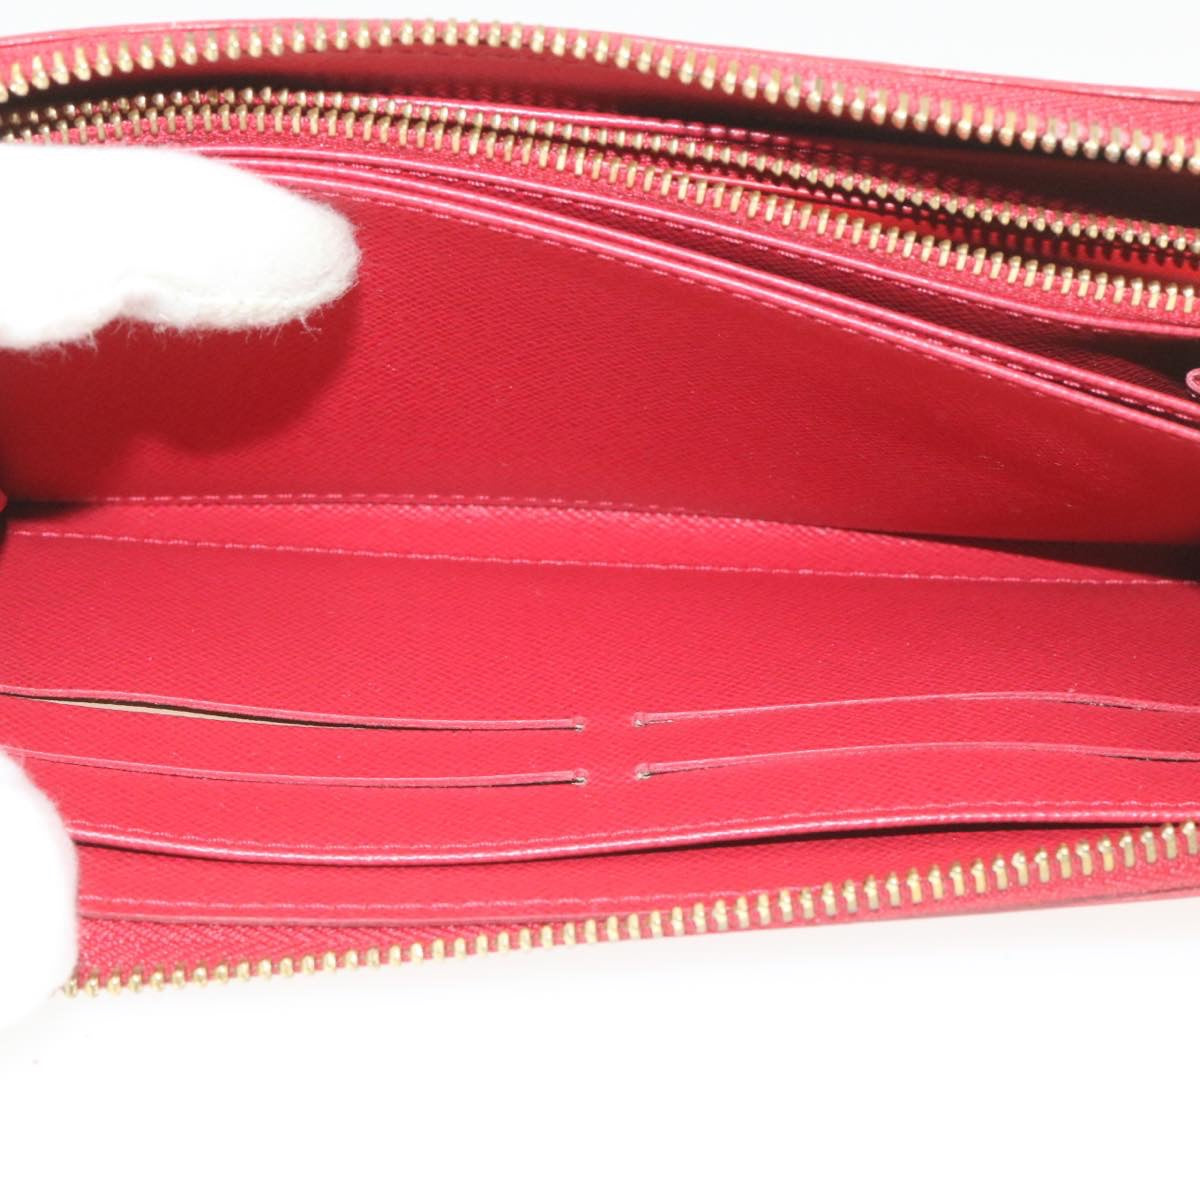 LOUIS VUITTON Panama line Zippy Wallet Long Wallet Red M58043 LV Auth hk016